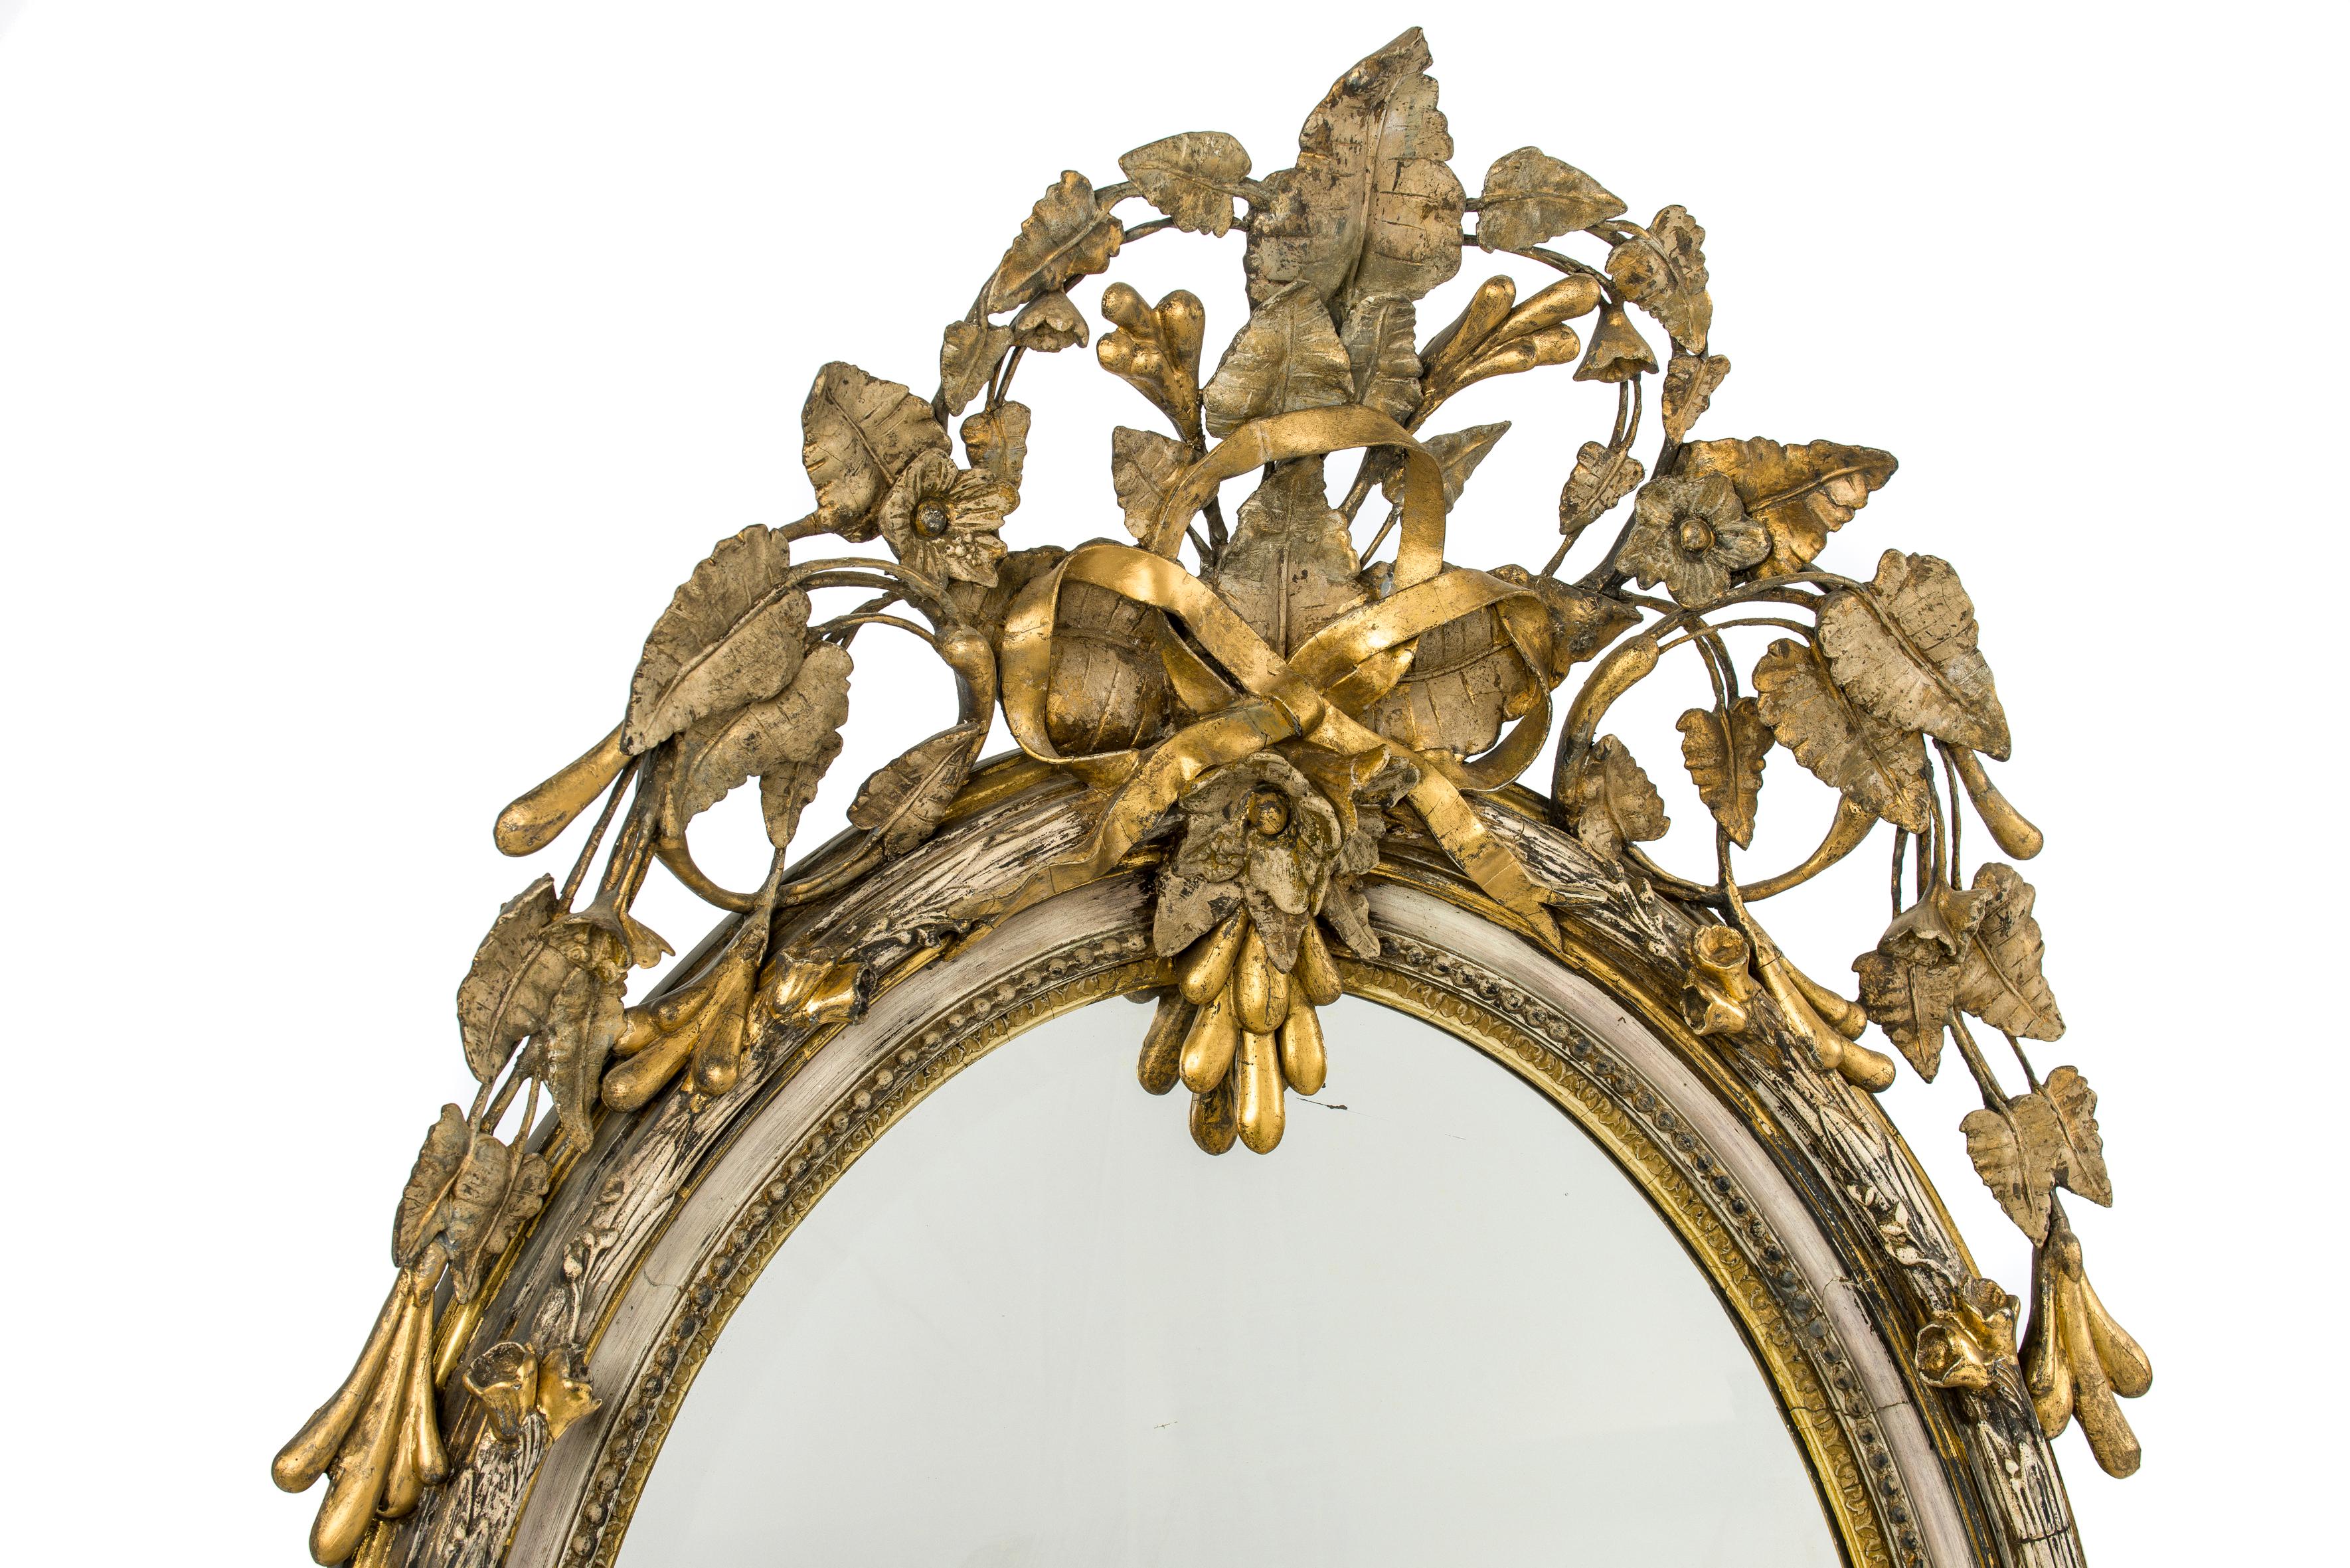 Un beau miroir ovale ancien inspiré par la nature, fabriqué en France vers 1860. 
La partie la plus élevée du cadre a une forme d'écorce et est décorée de fleurs et de feuilles. Le cadre est décoré d'un écusson complexe en haut et en bas. L'écusson